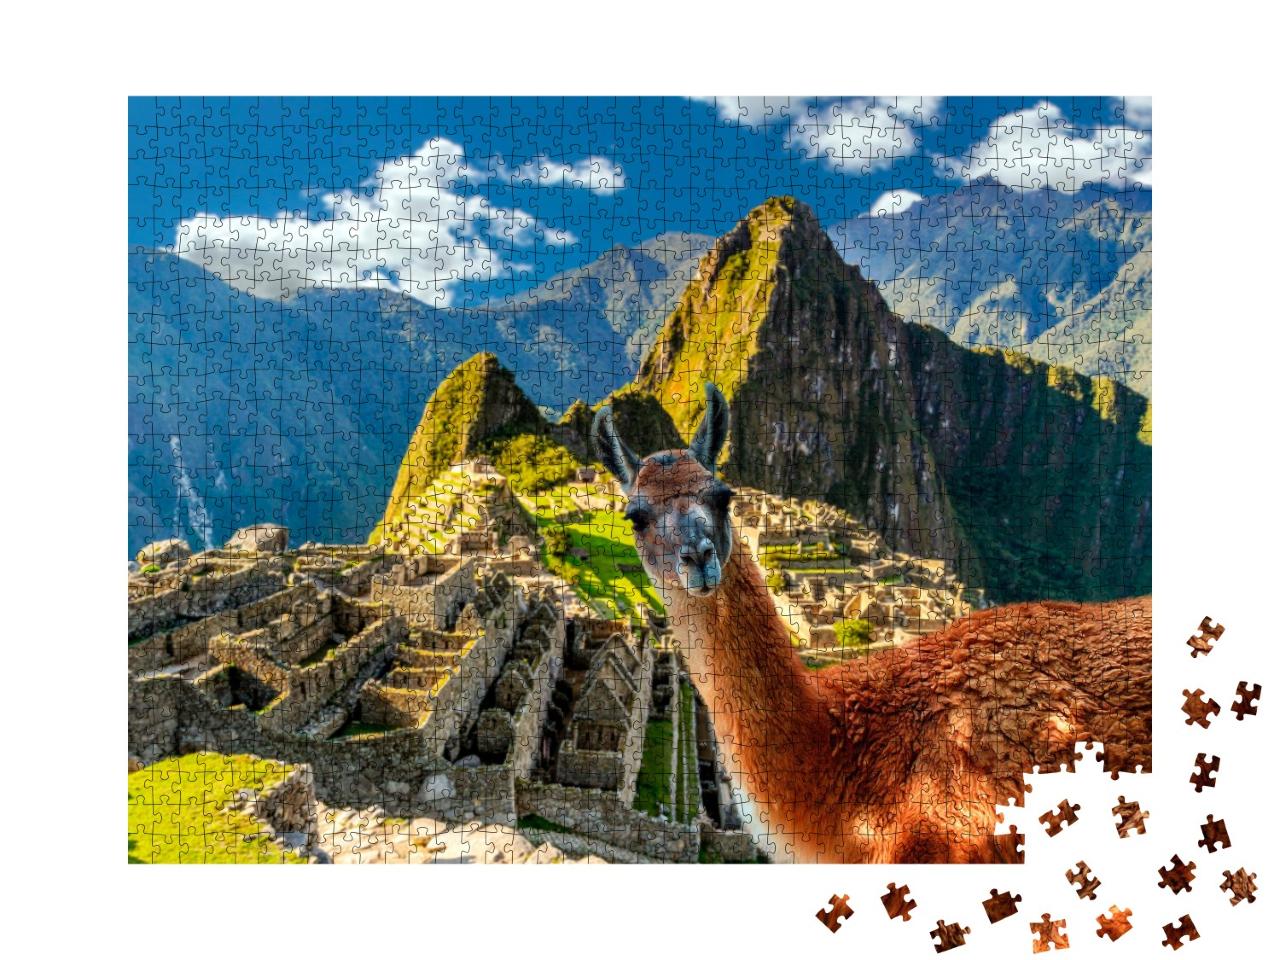 Puzzle de 1000 pièces « Lama debout au point de vue du Machu Picchu au Pérou »